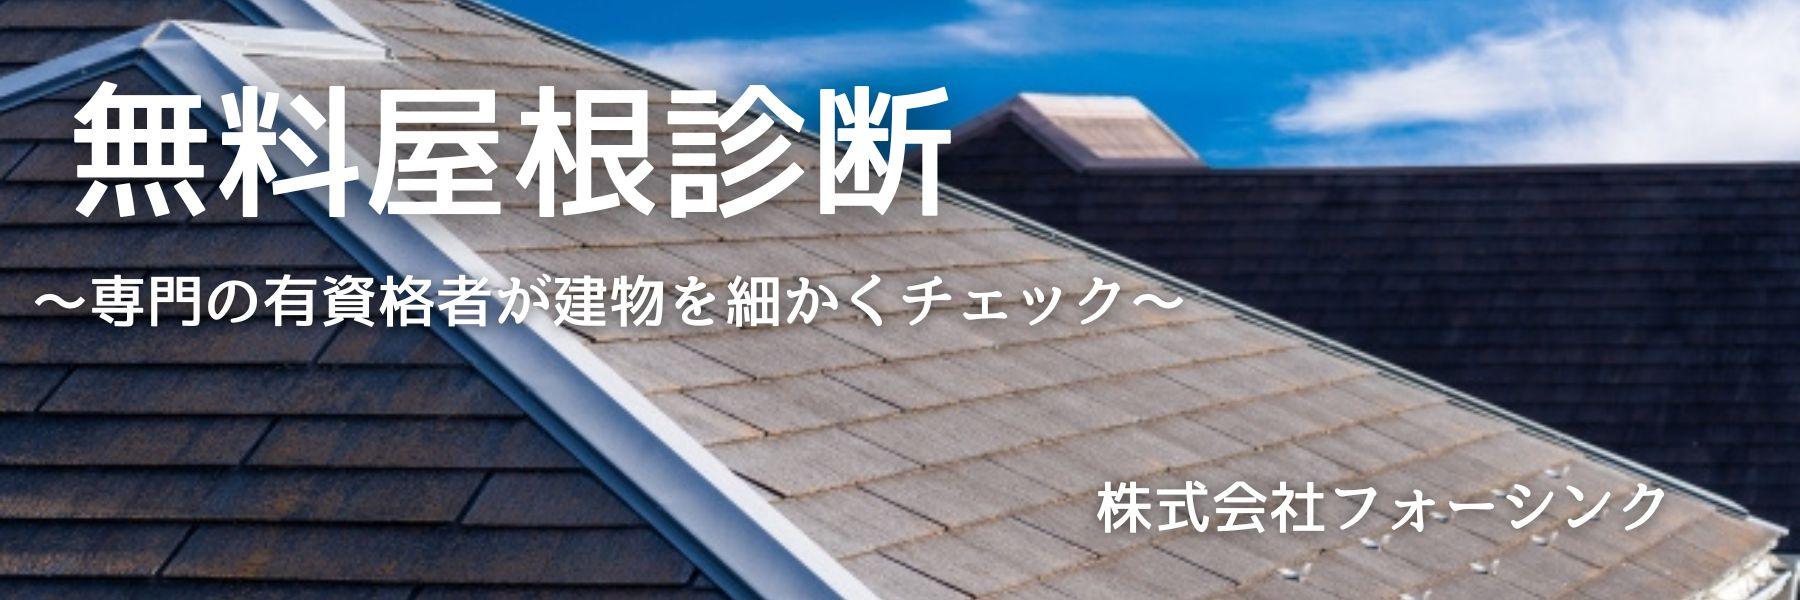 屋根の修繕にコンパネは用いれる？屋根修繕に最適な素材選びとは